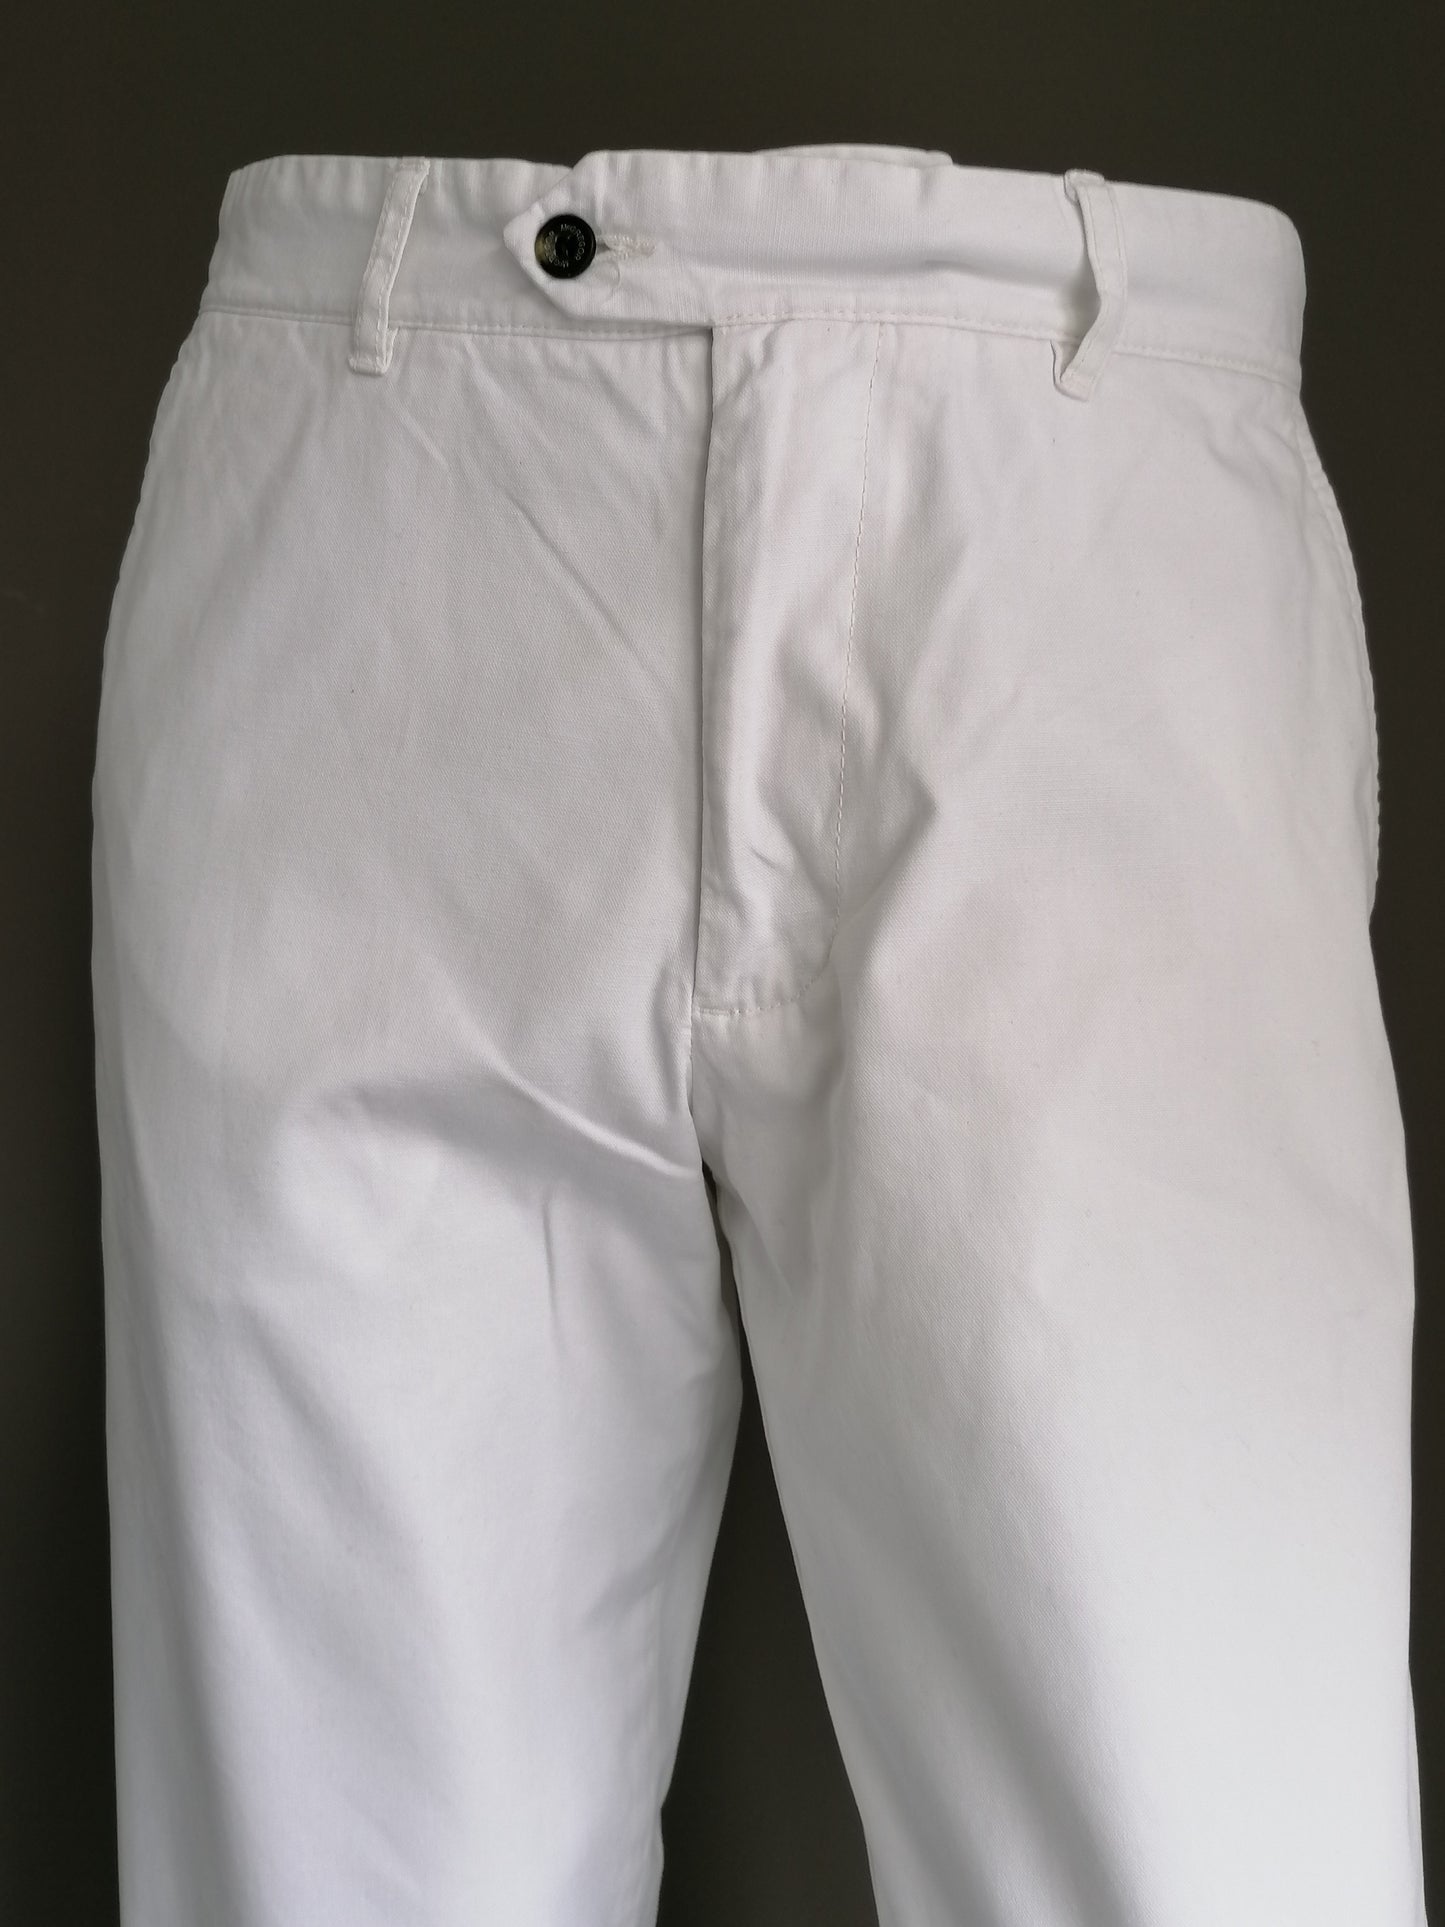 Pantalones McGregor. Blanco coloreado. El tamaño F98 se ve como las dimensiones iguales a un tamaño W31- L32.